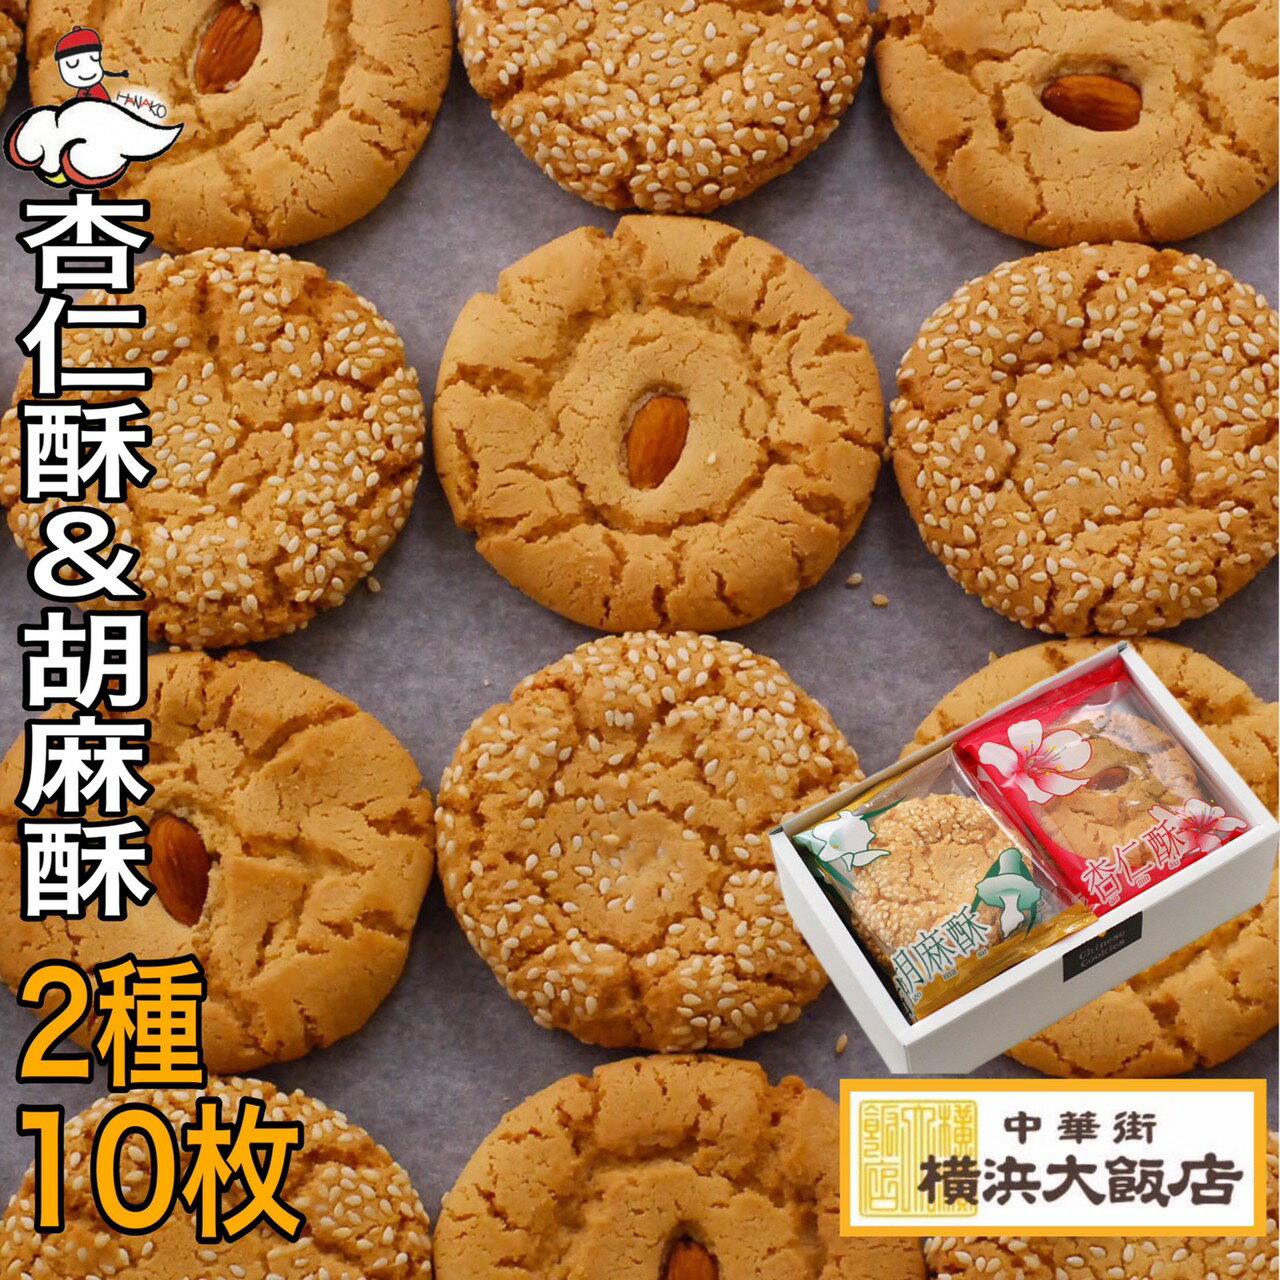 中華 菓子 杏仁酥 & 胡麻酥(10枚入り) ア...の商品画像